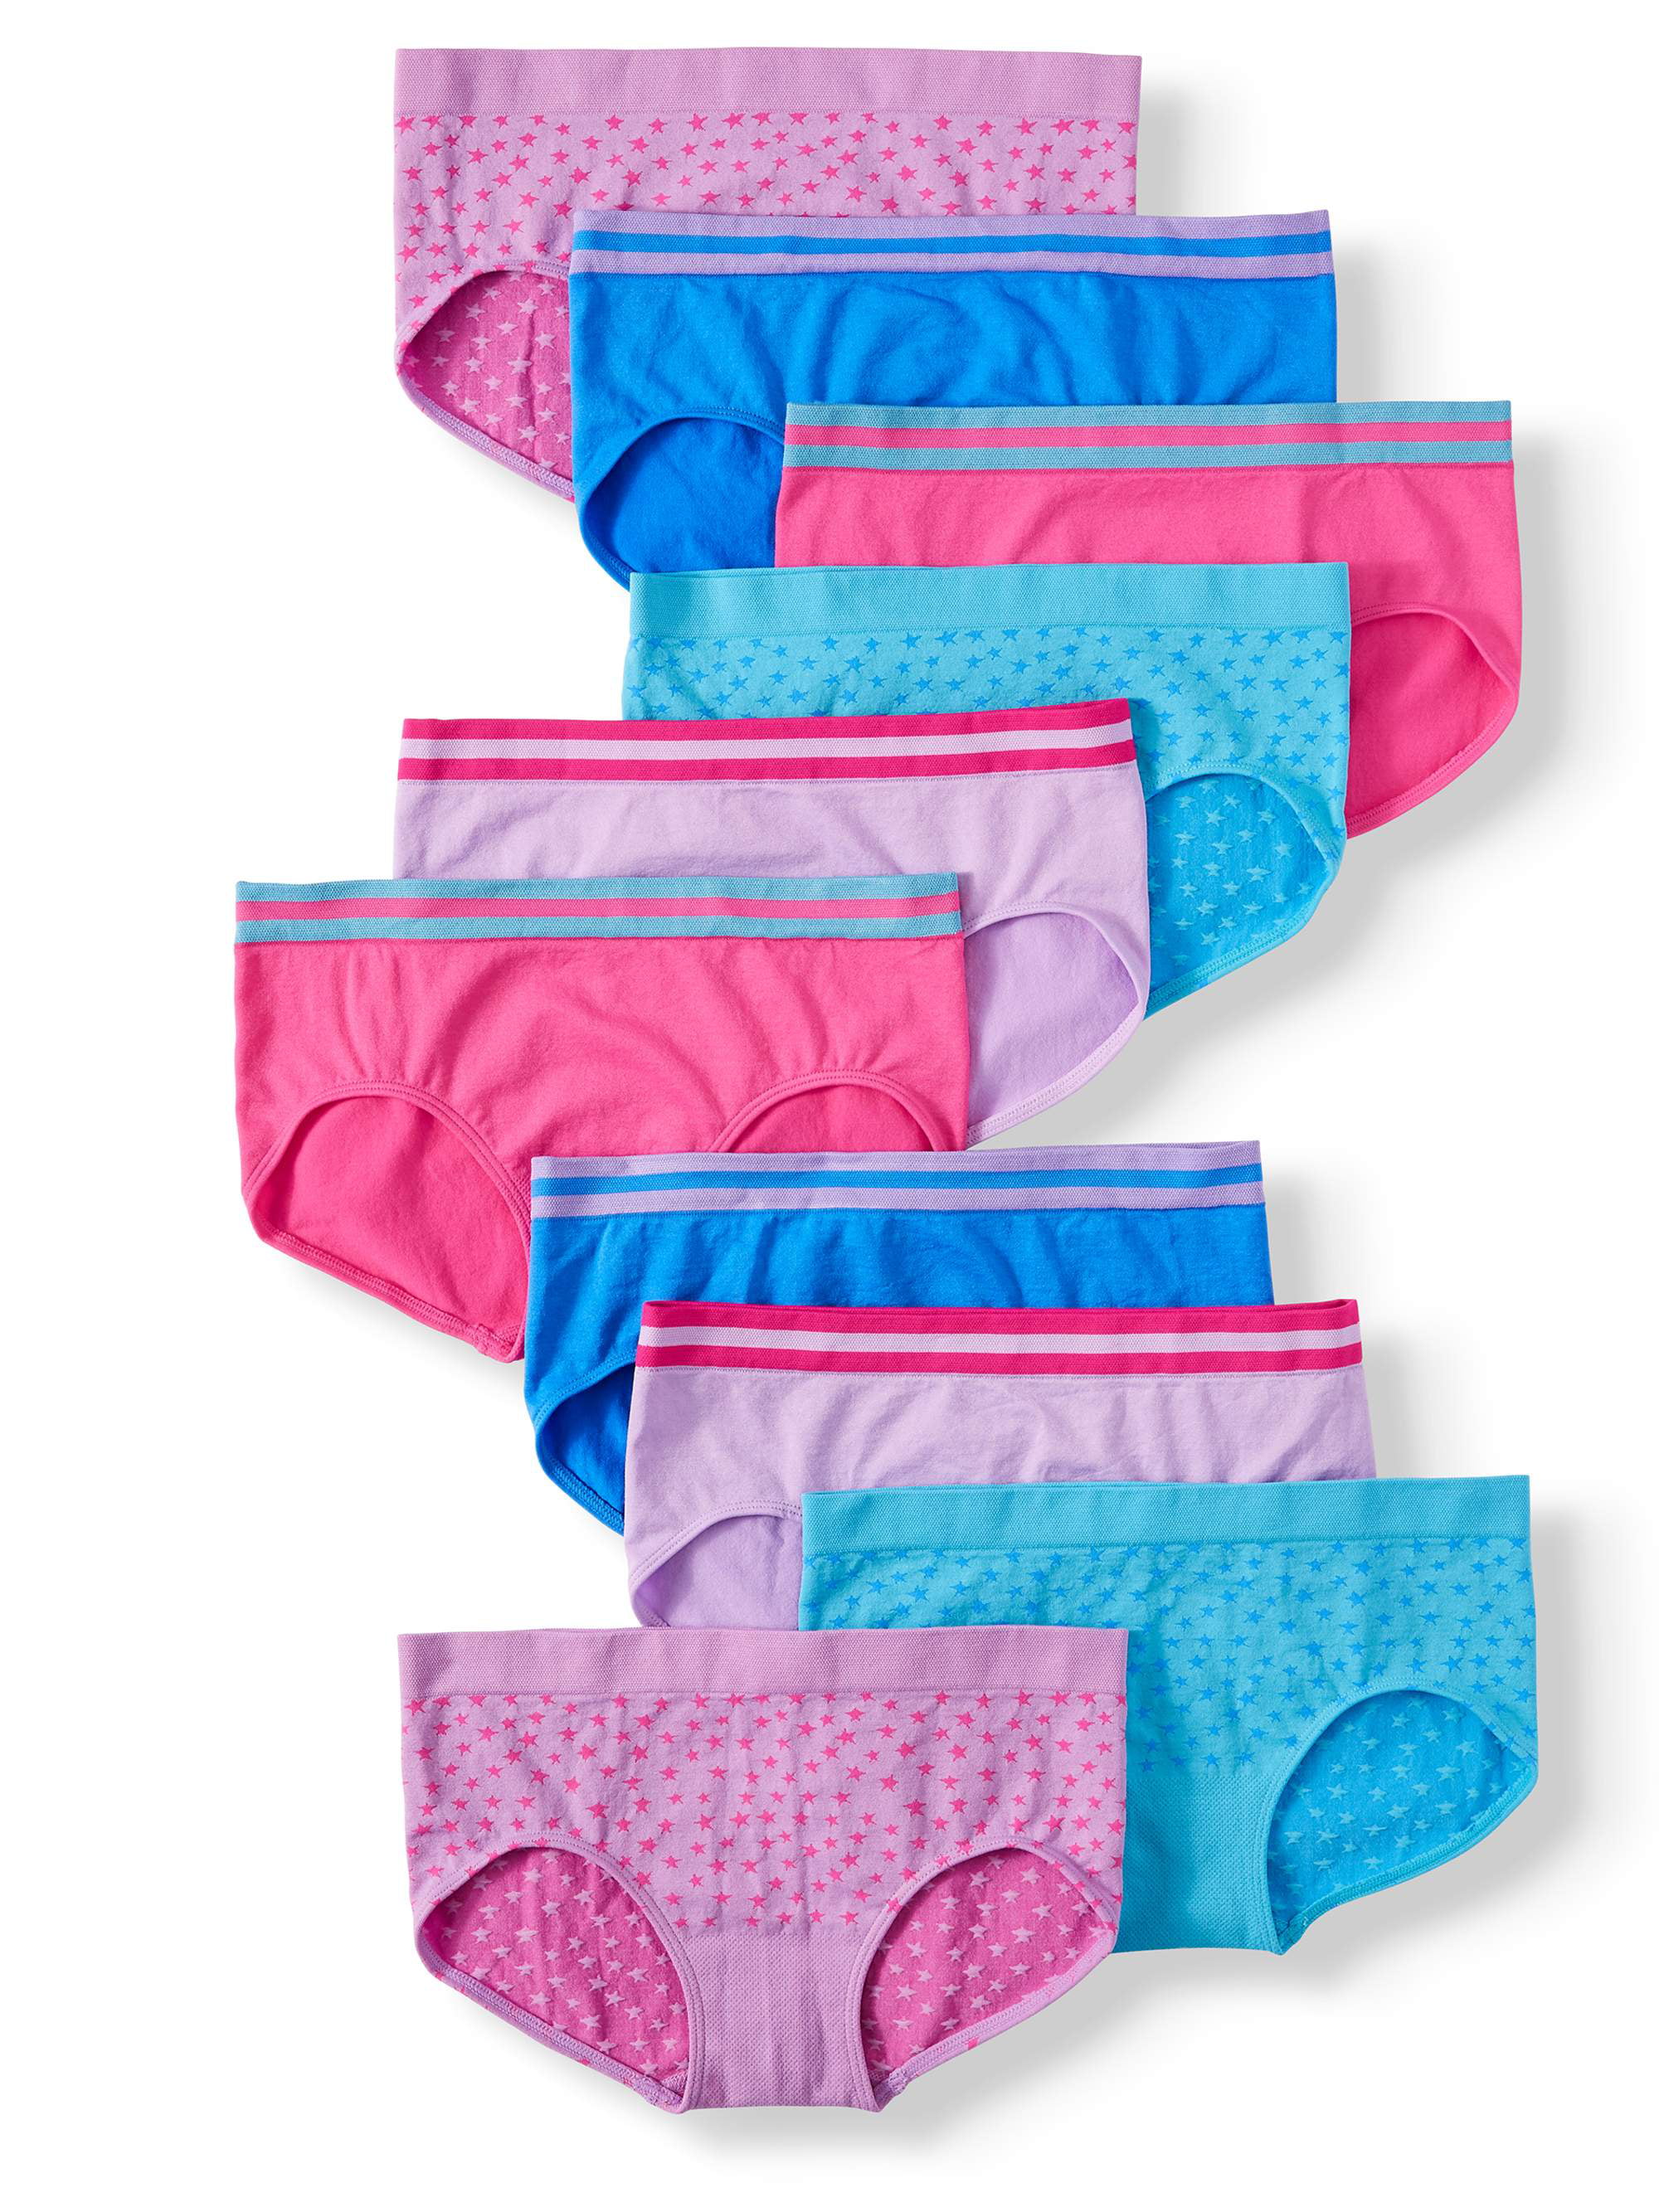 Girls 2-10 Years Underwear online at Ackermans